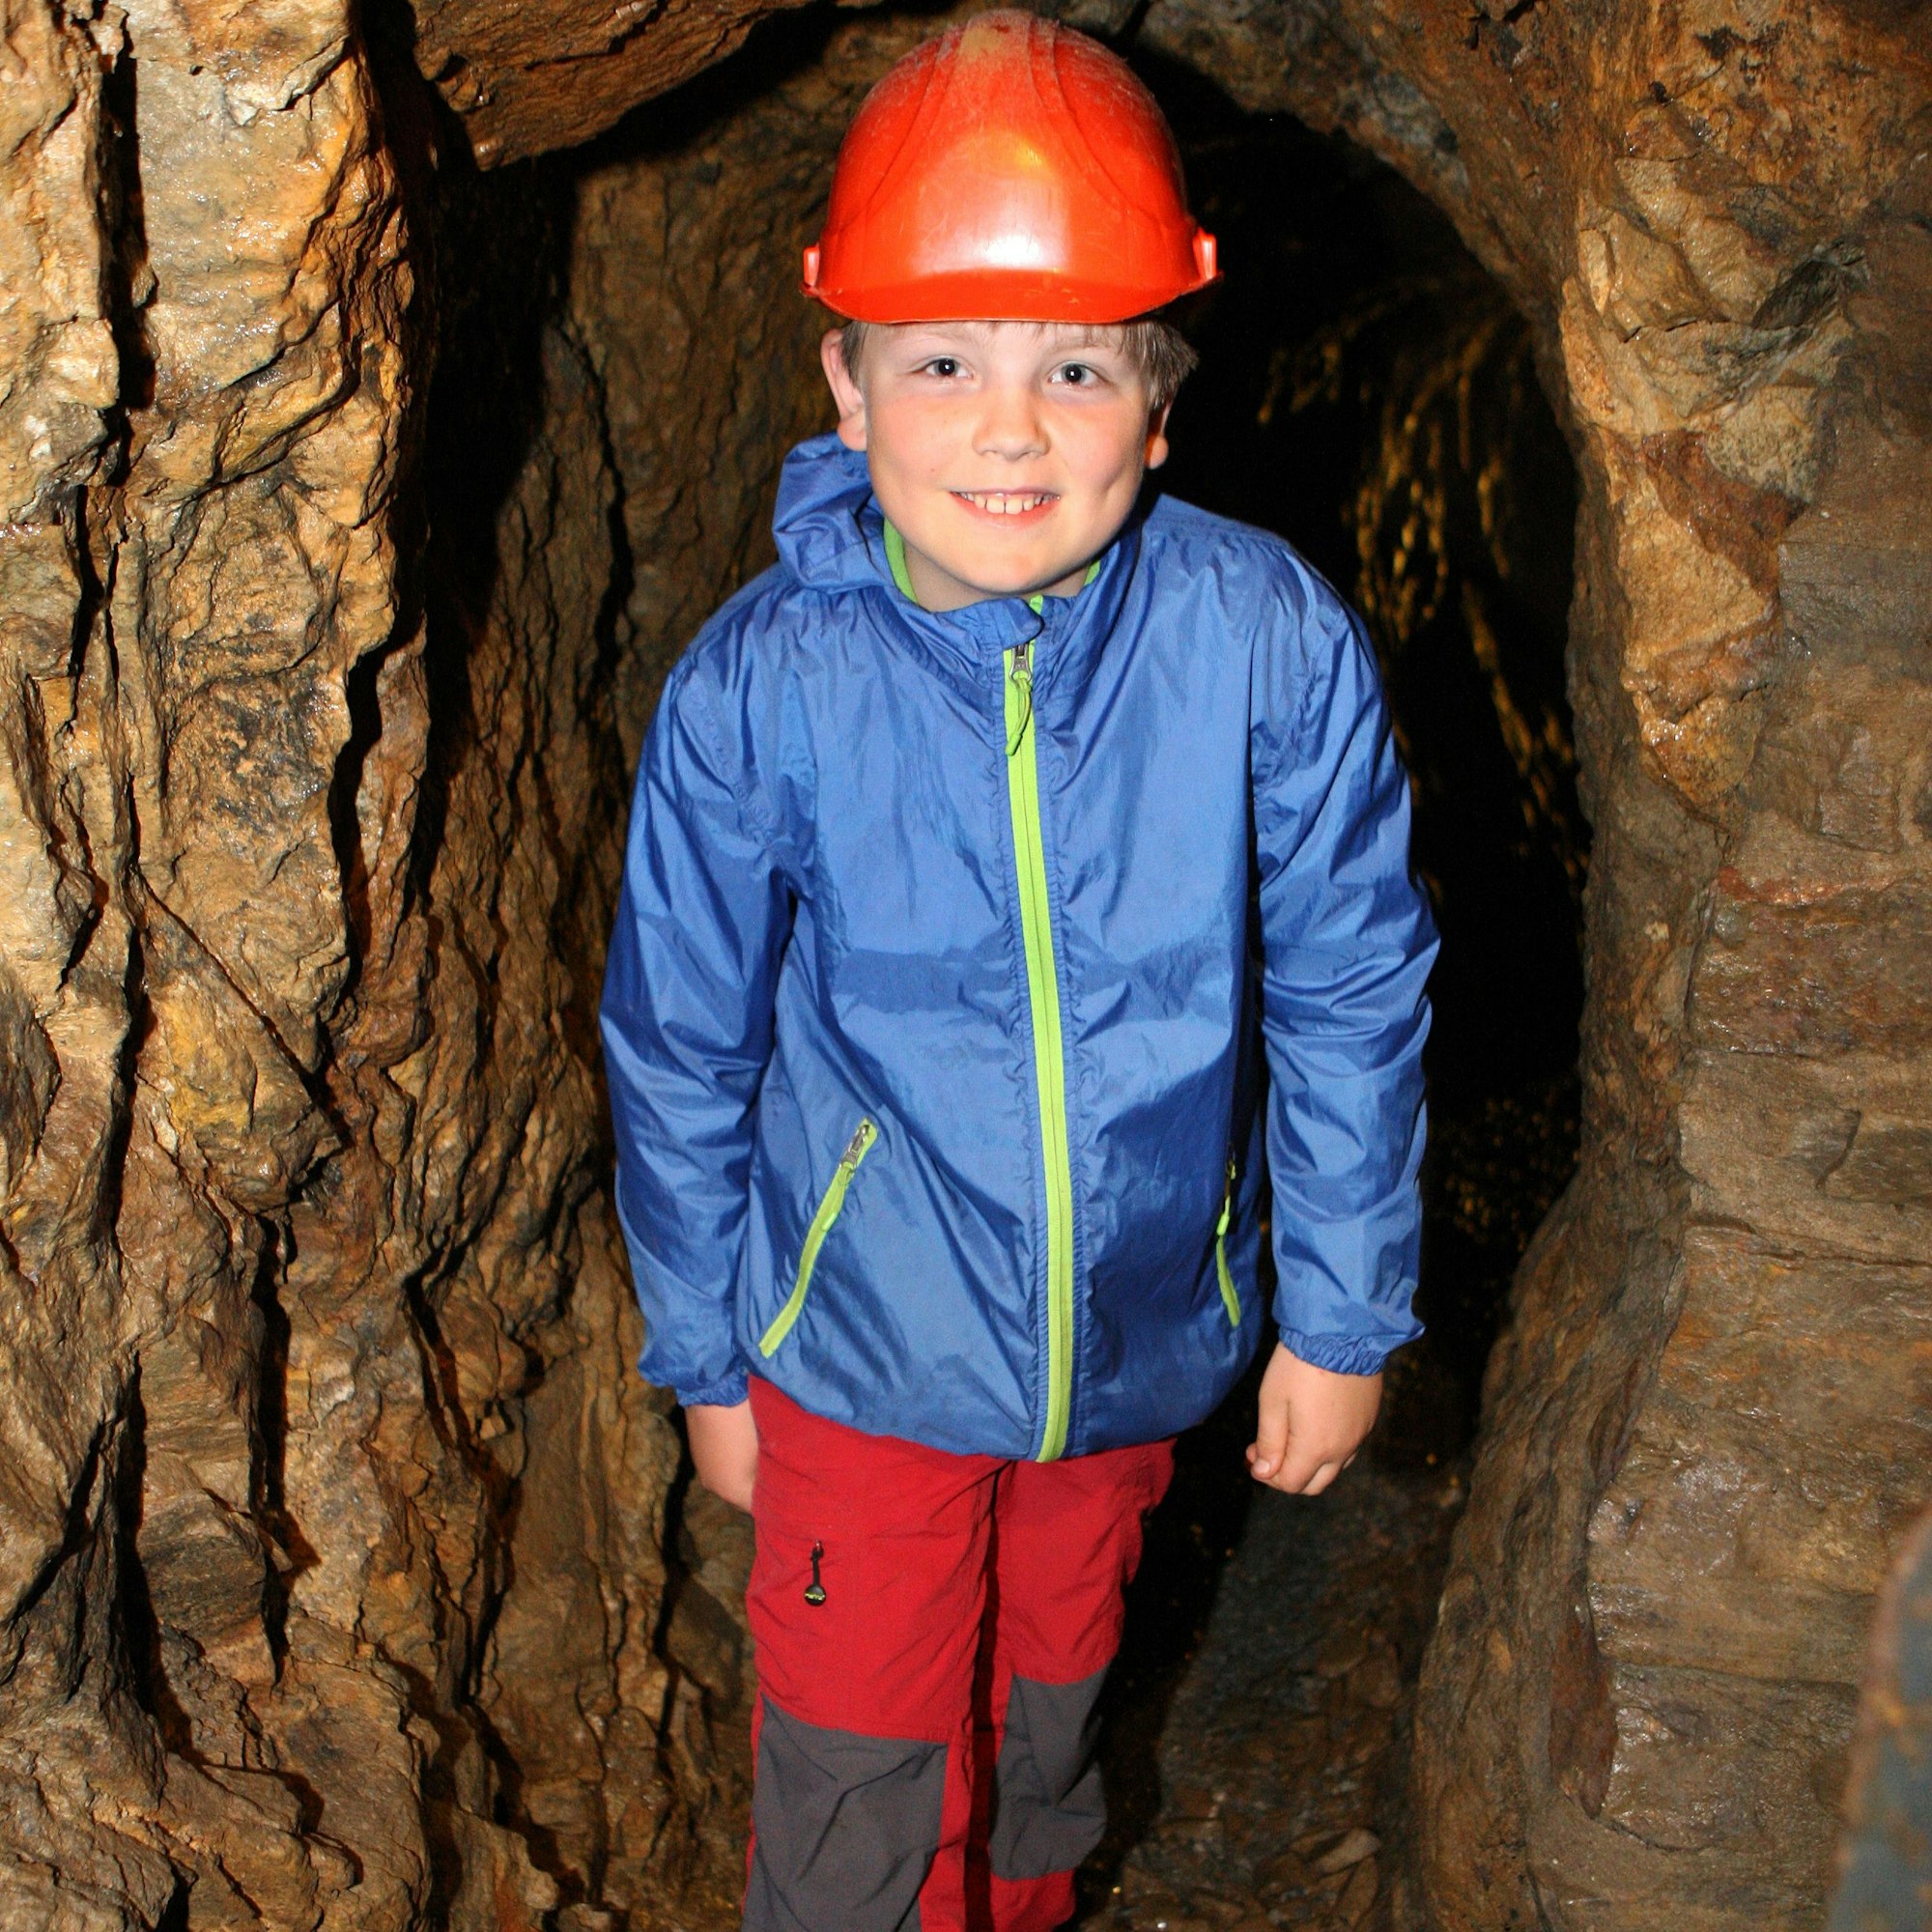 Ein Junge mit rotem Helm geht durch einen engen Bergwerksstollen.